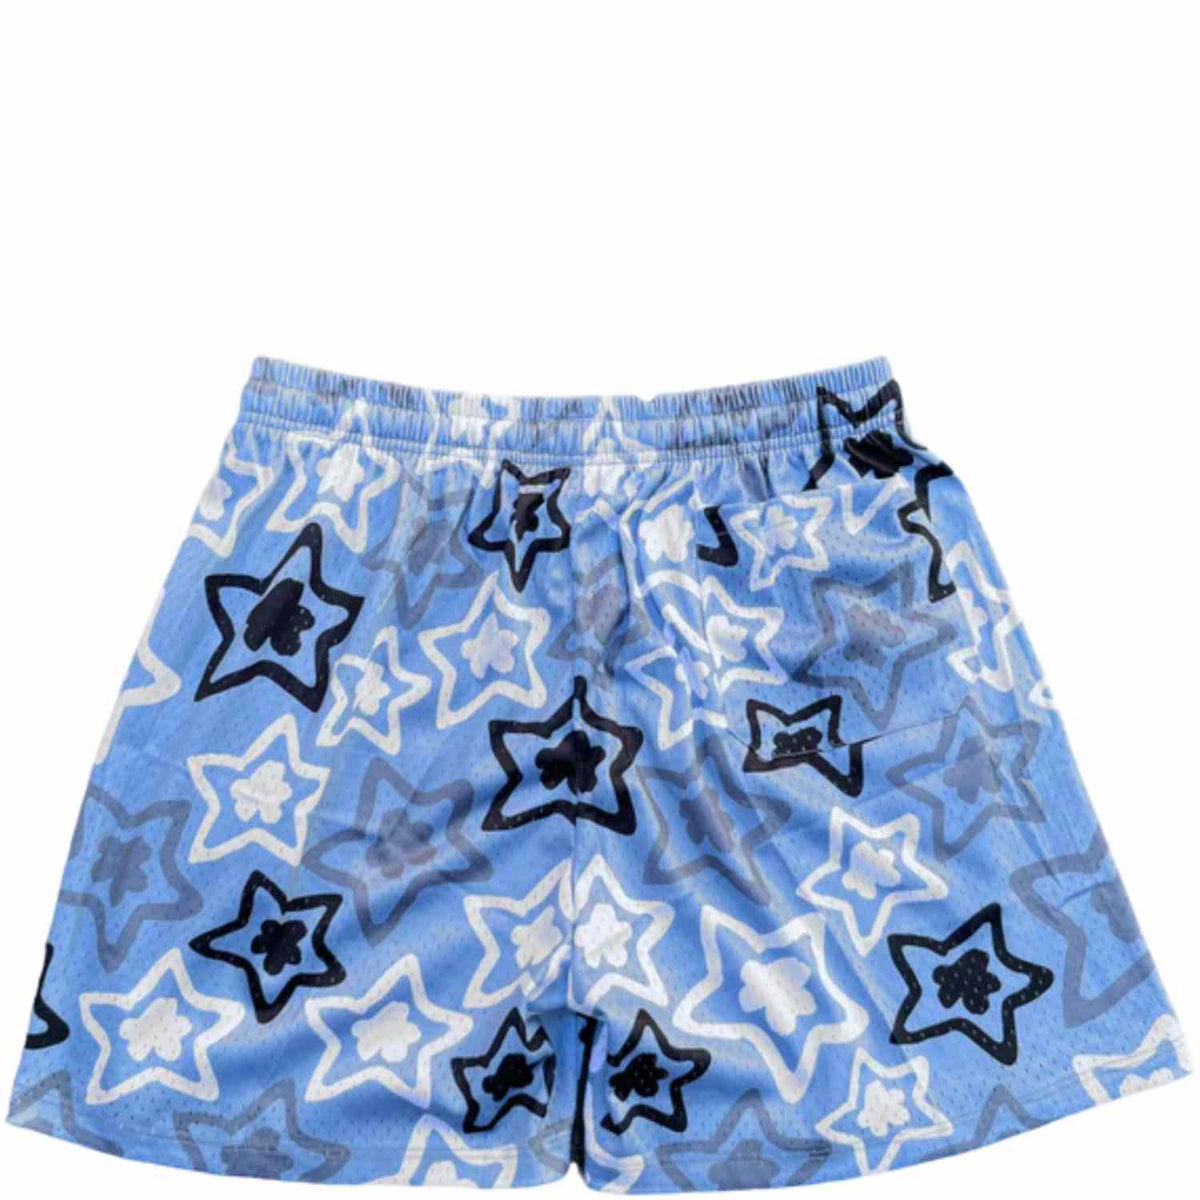  Star Mesh Shorts - Blue